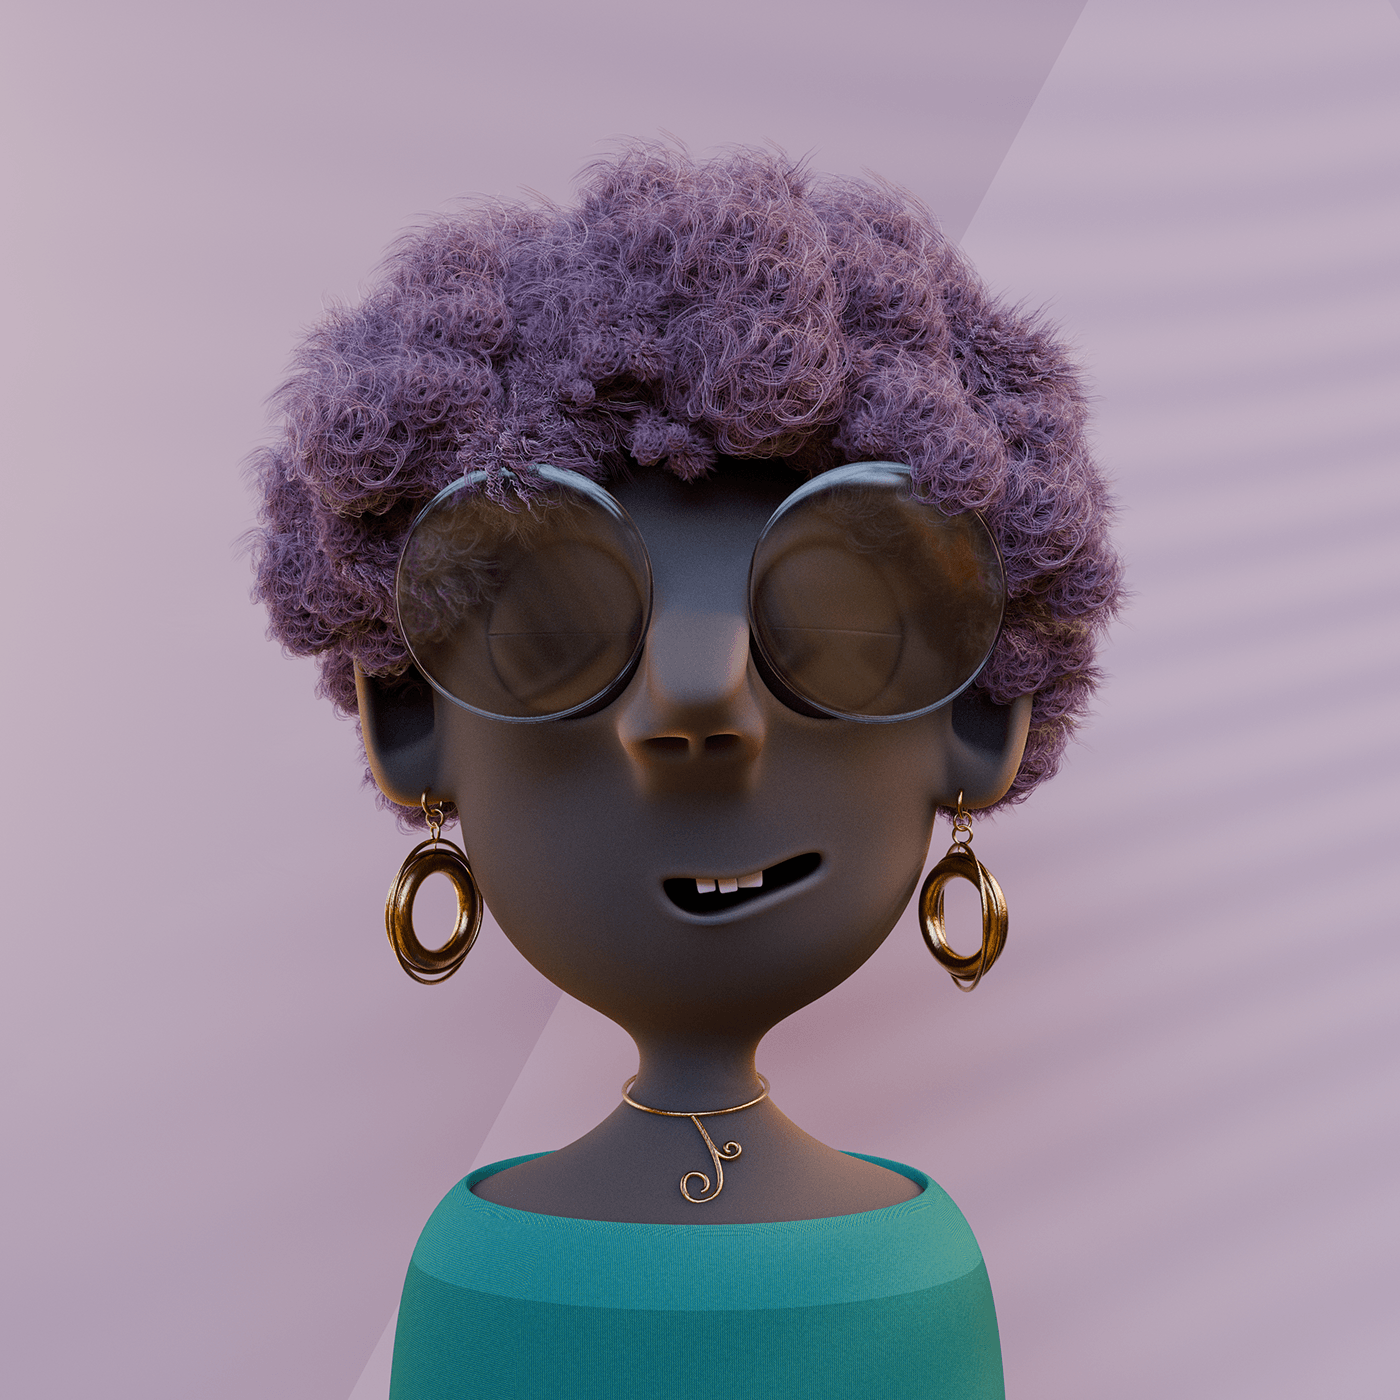 3D Character characterdesign blender3d CGI portrait digital illustration female